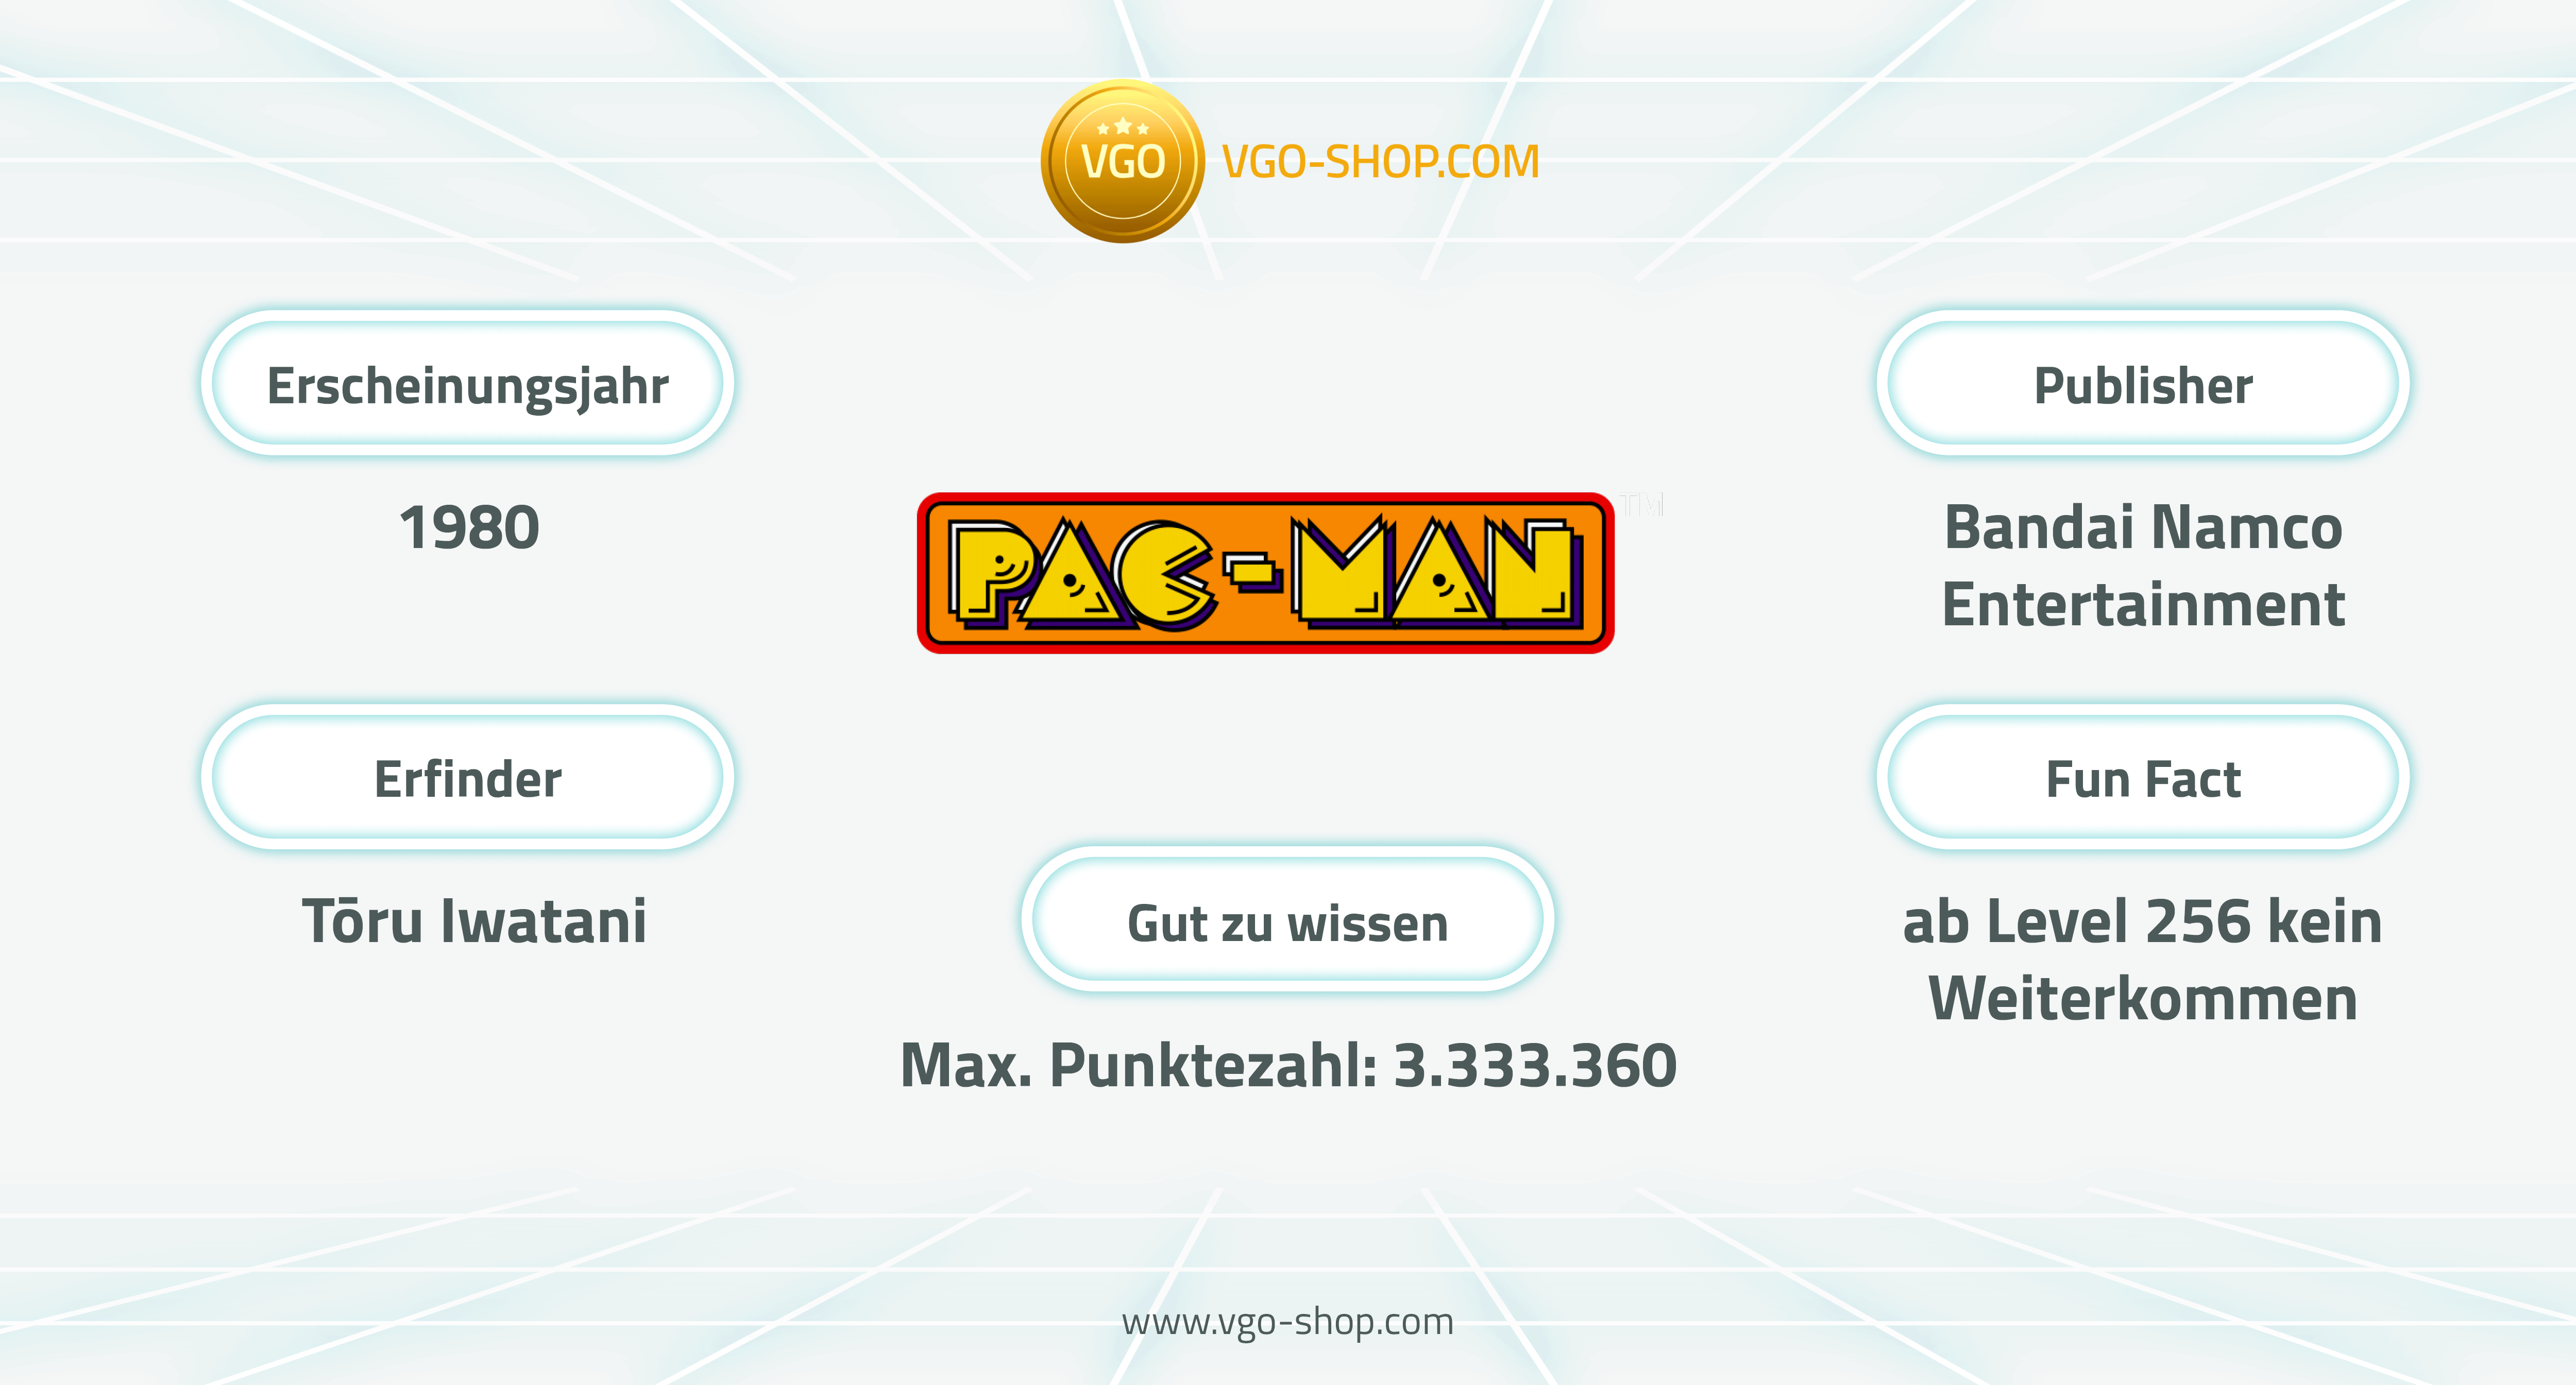 Pac-Man war maßgeblich an der Entwicklung der Videospiele beteiligt